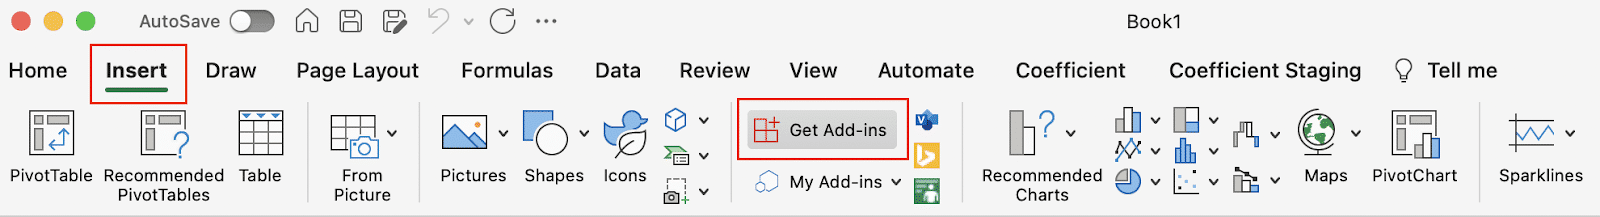 Add-ins option for Excel Desktop